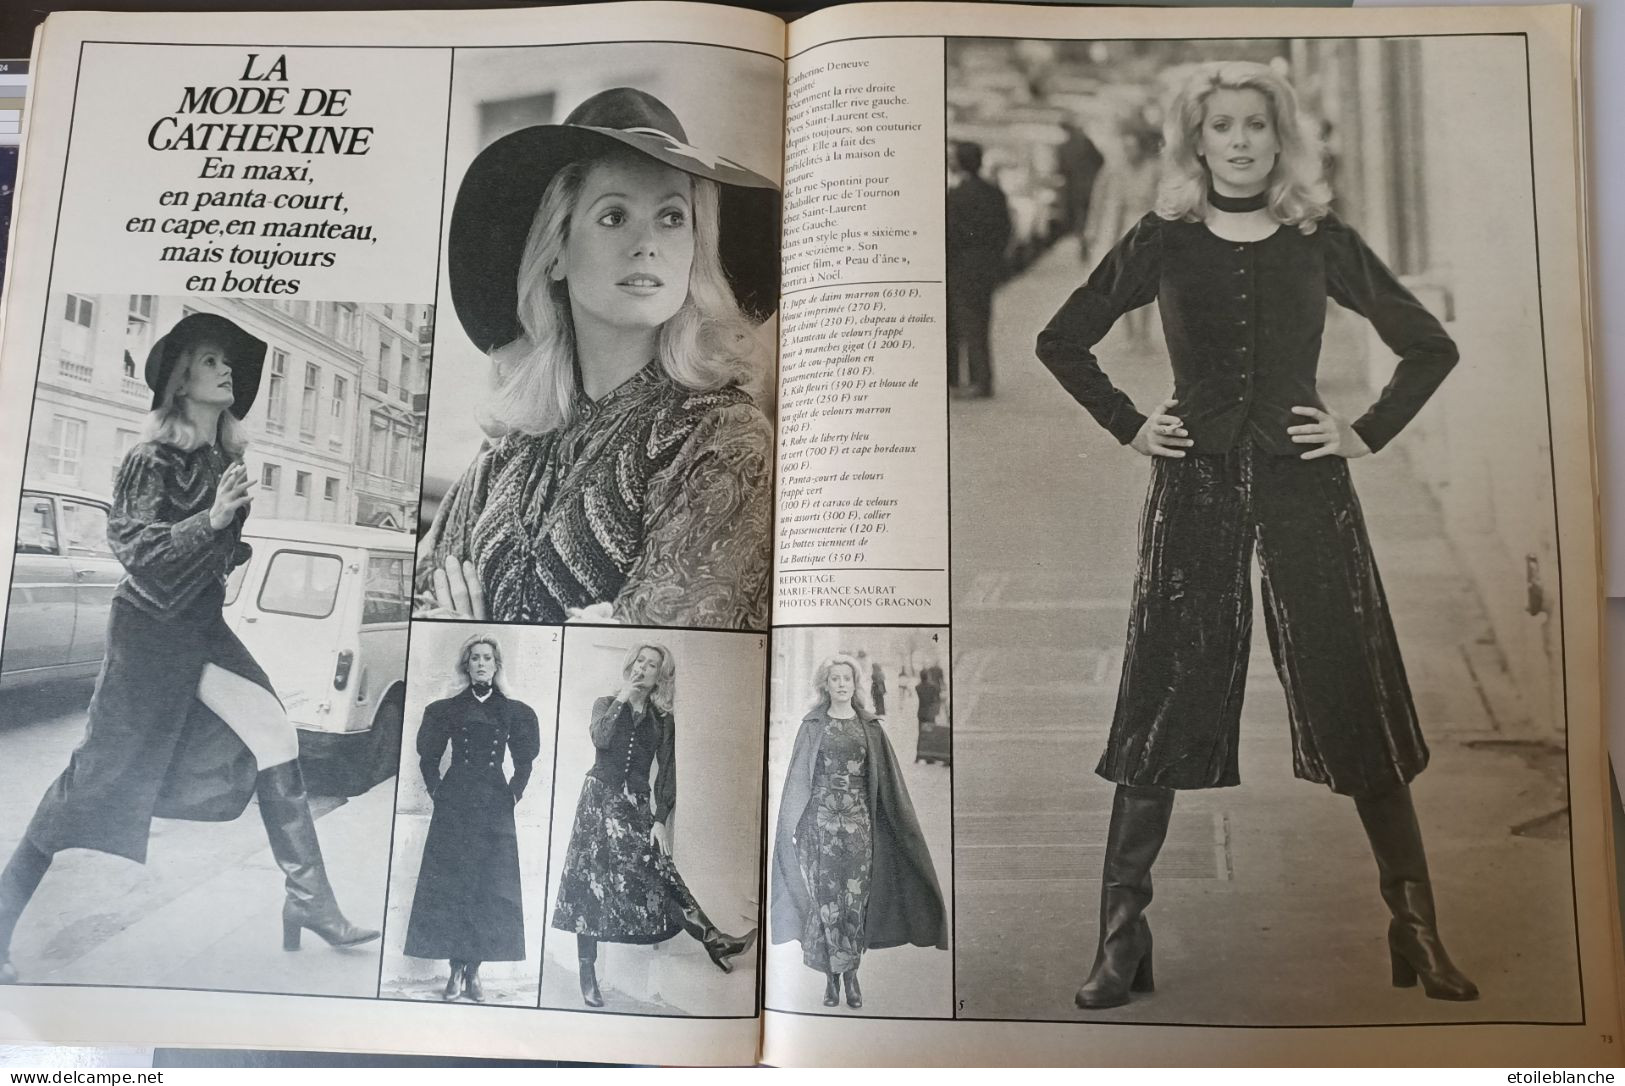 CATHERINE DENEUVE - Photos Mode D'une Revue Paris Match 1968 + 2 Autres (revue Datée 1970) - Mode